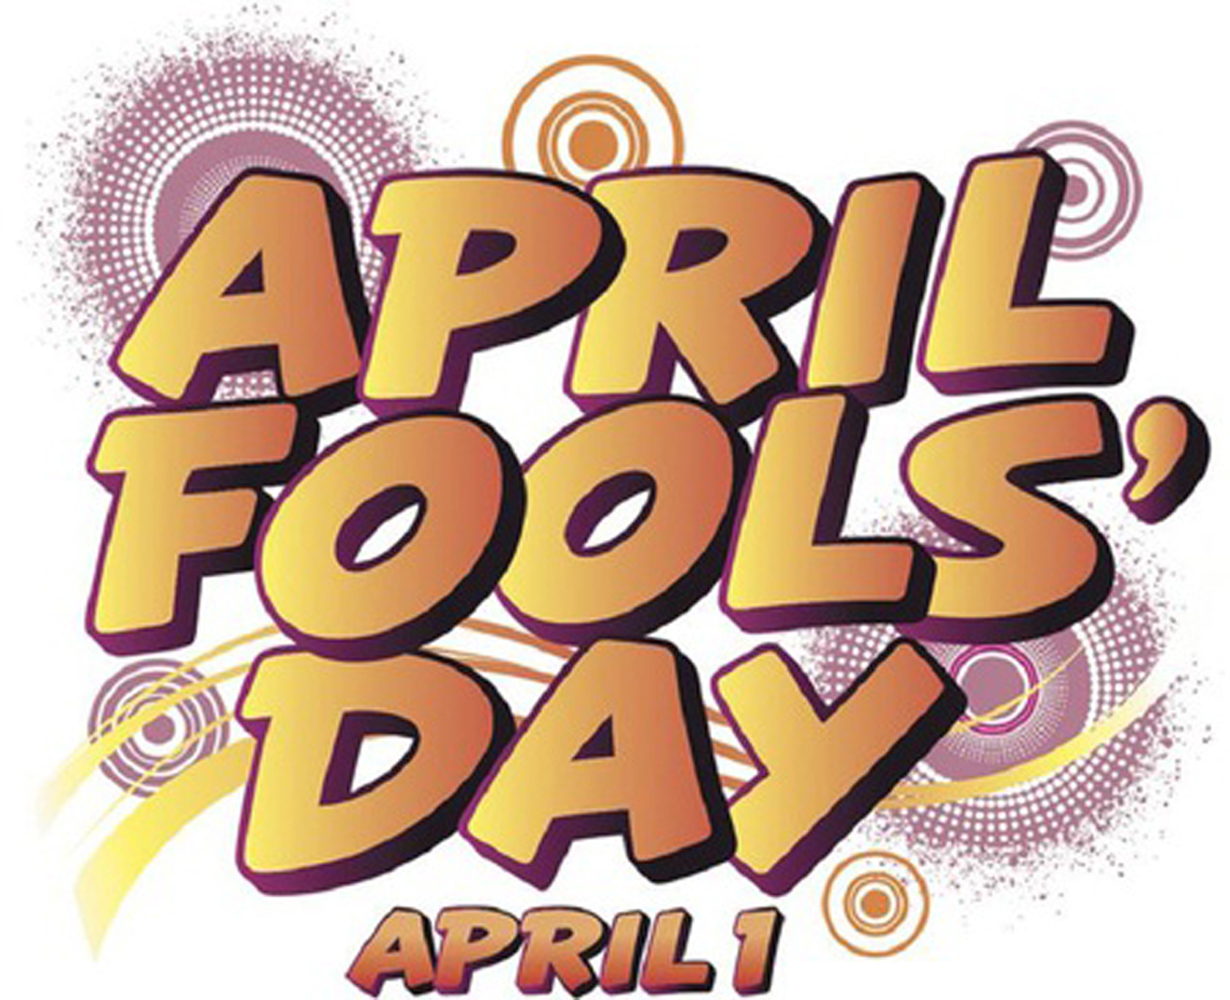 April Fools Day april 1 greetings